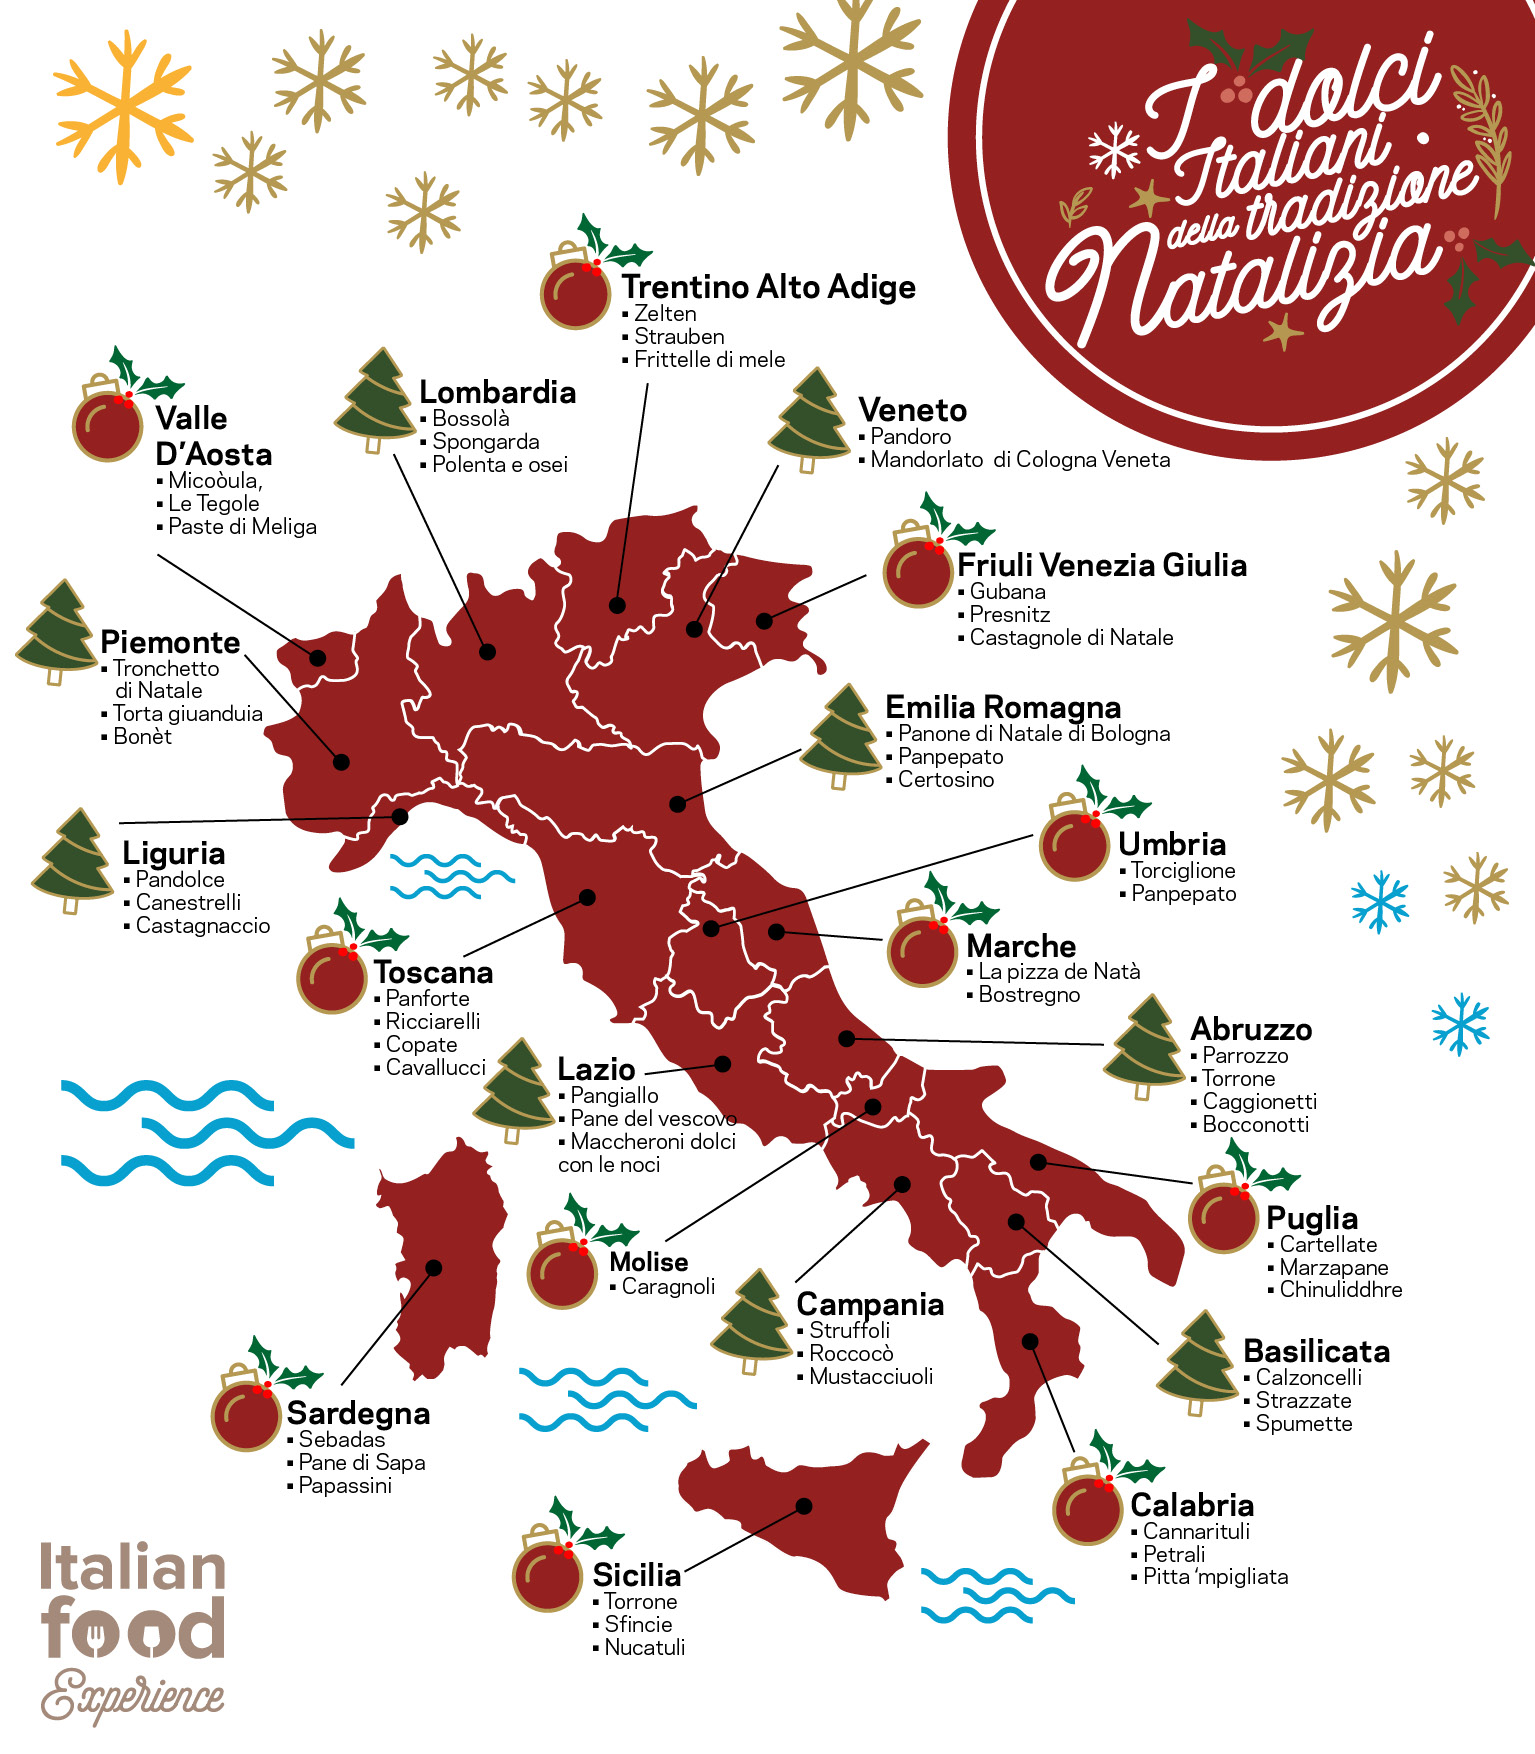 Dolci Natalizi Italiani Ricette.Dolci Tipici Natalizi In Italia Regione Per Regione